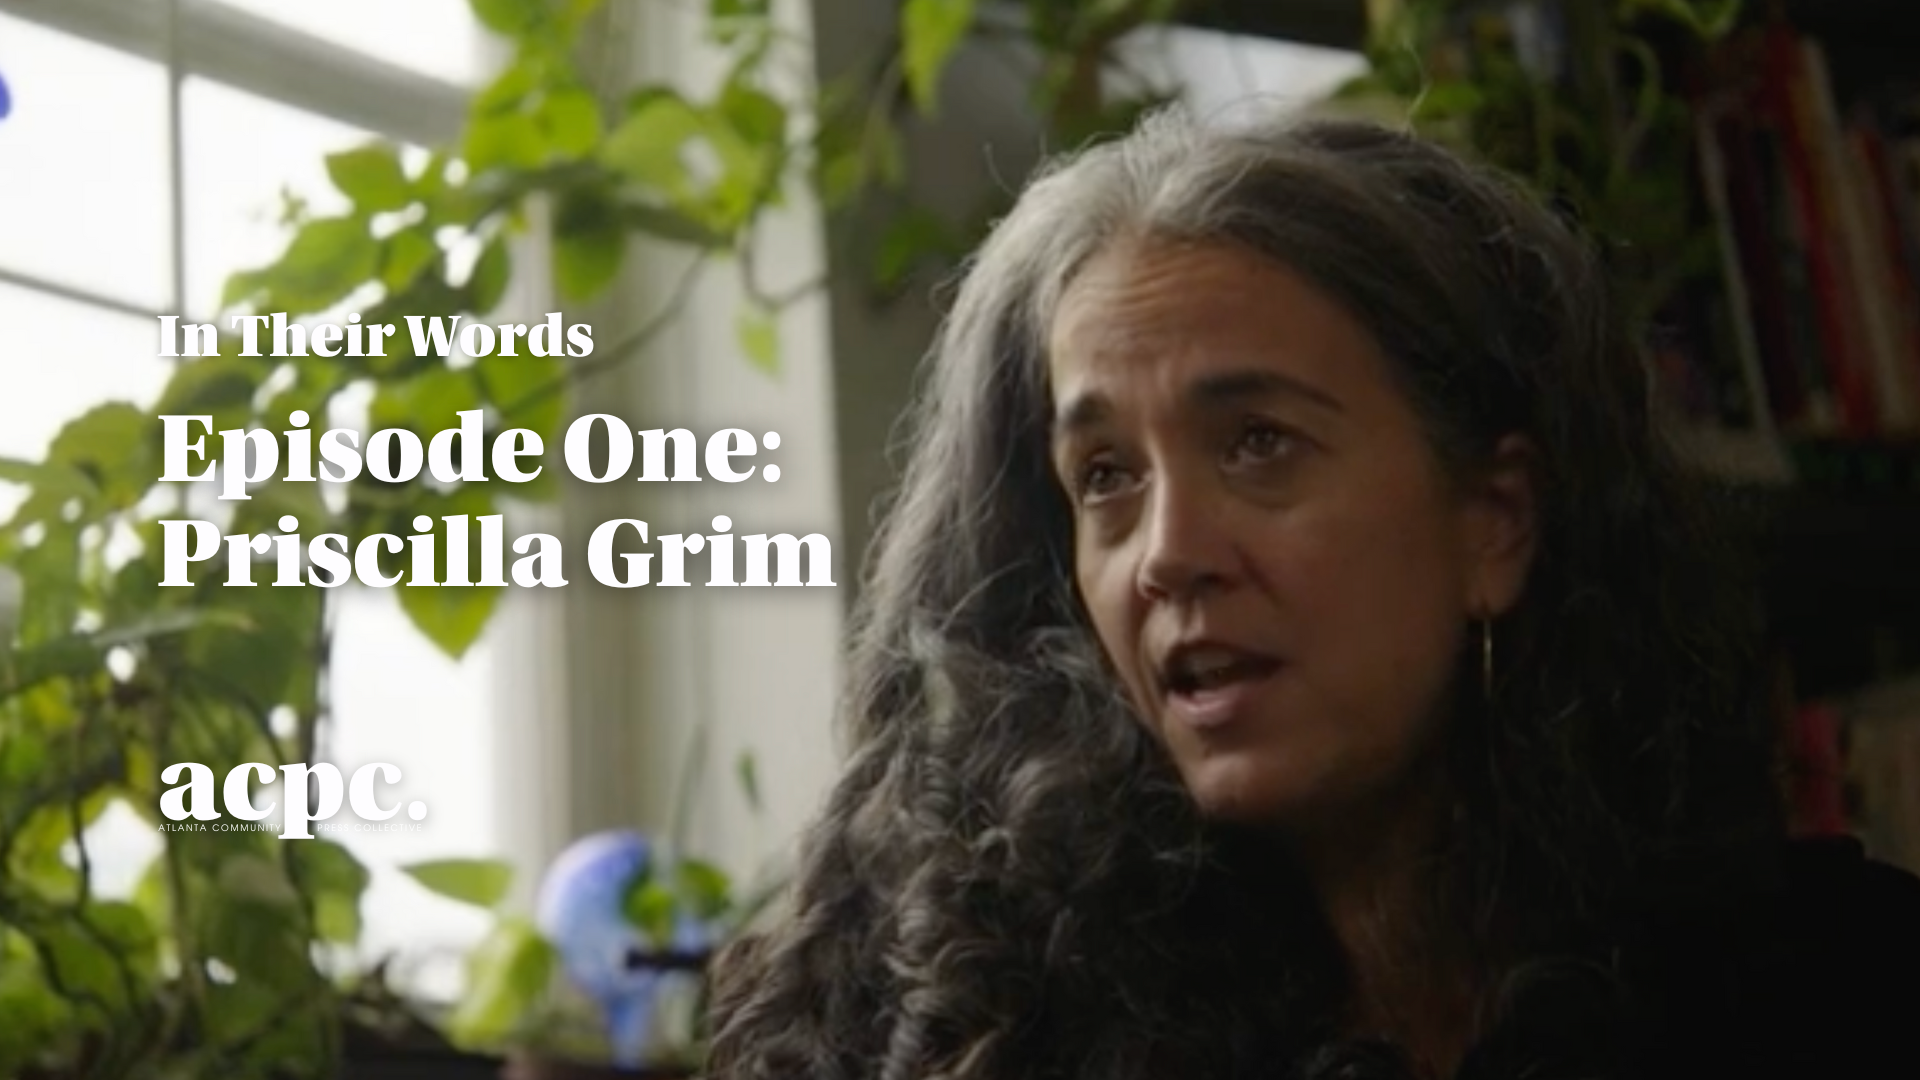 In Their Words episode 1: Priscilla Grim